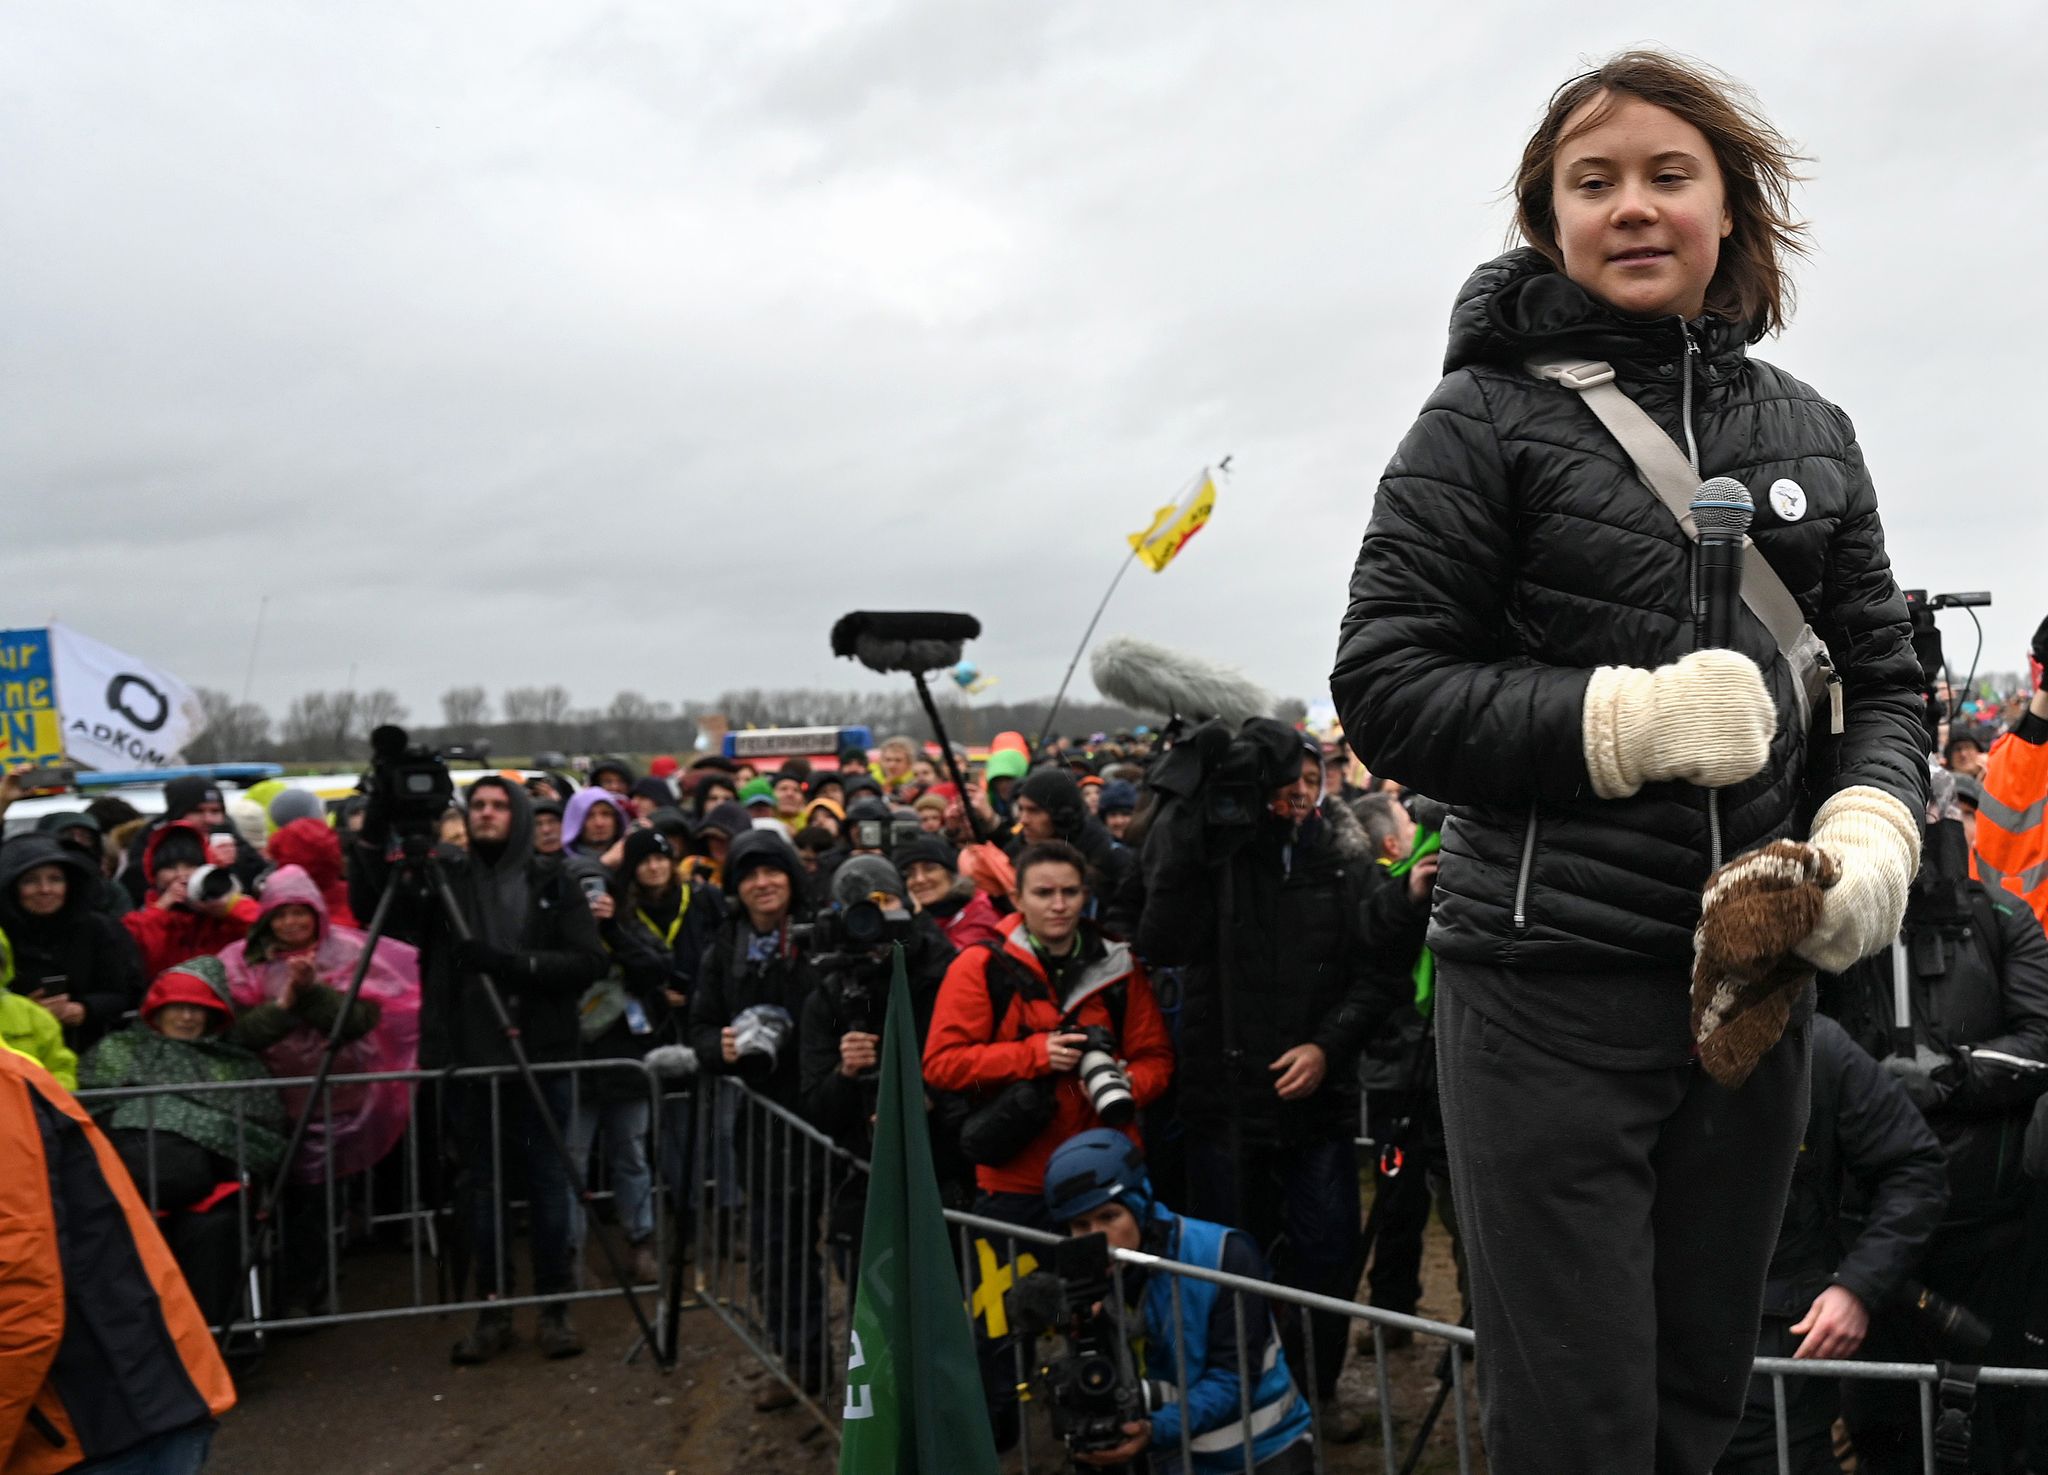 Die Klimaaktivistin Greta Thunberg steht auf der Bühne vor den versammelten Demonstranten.